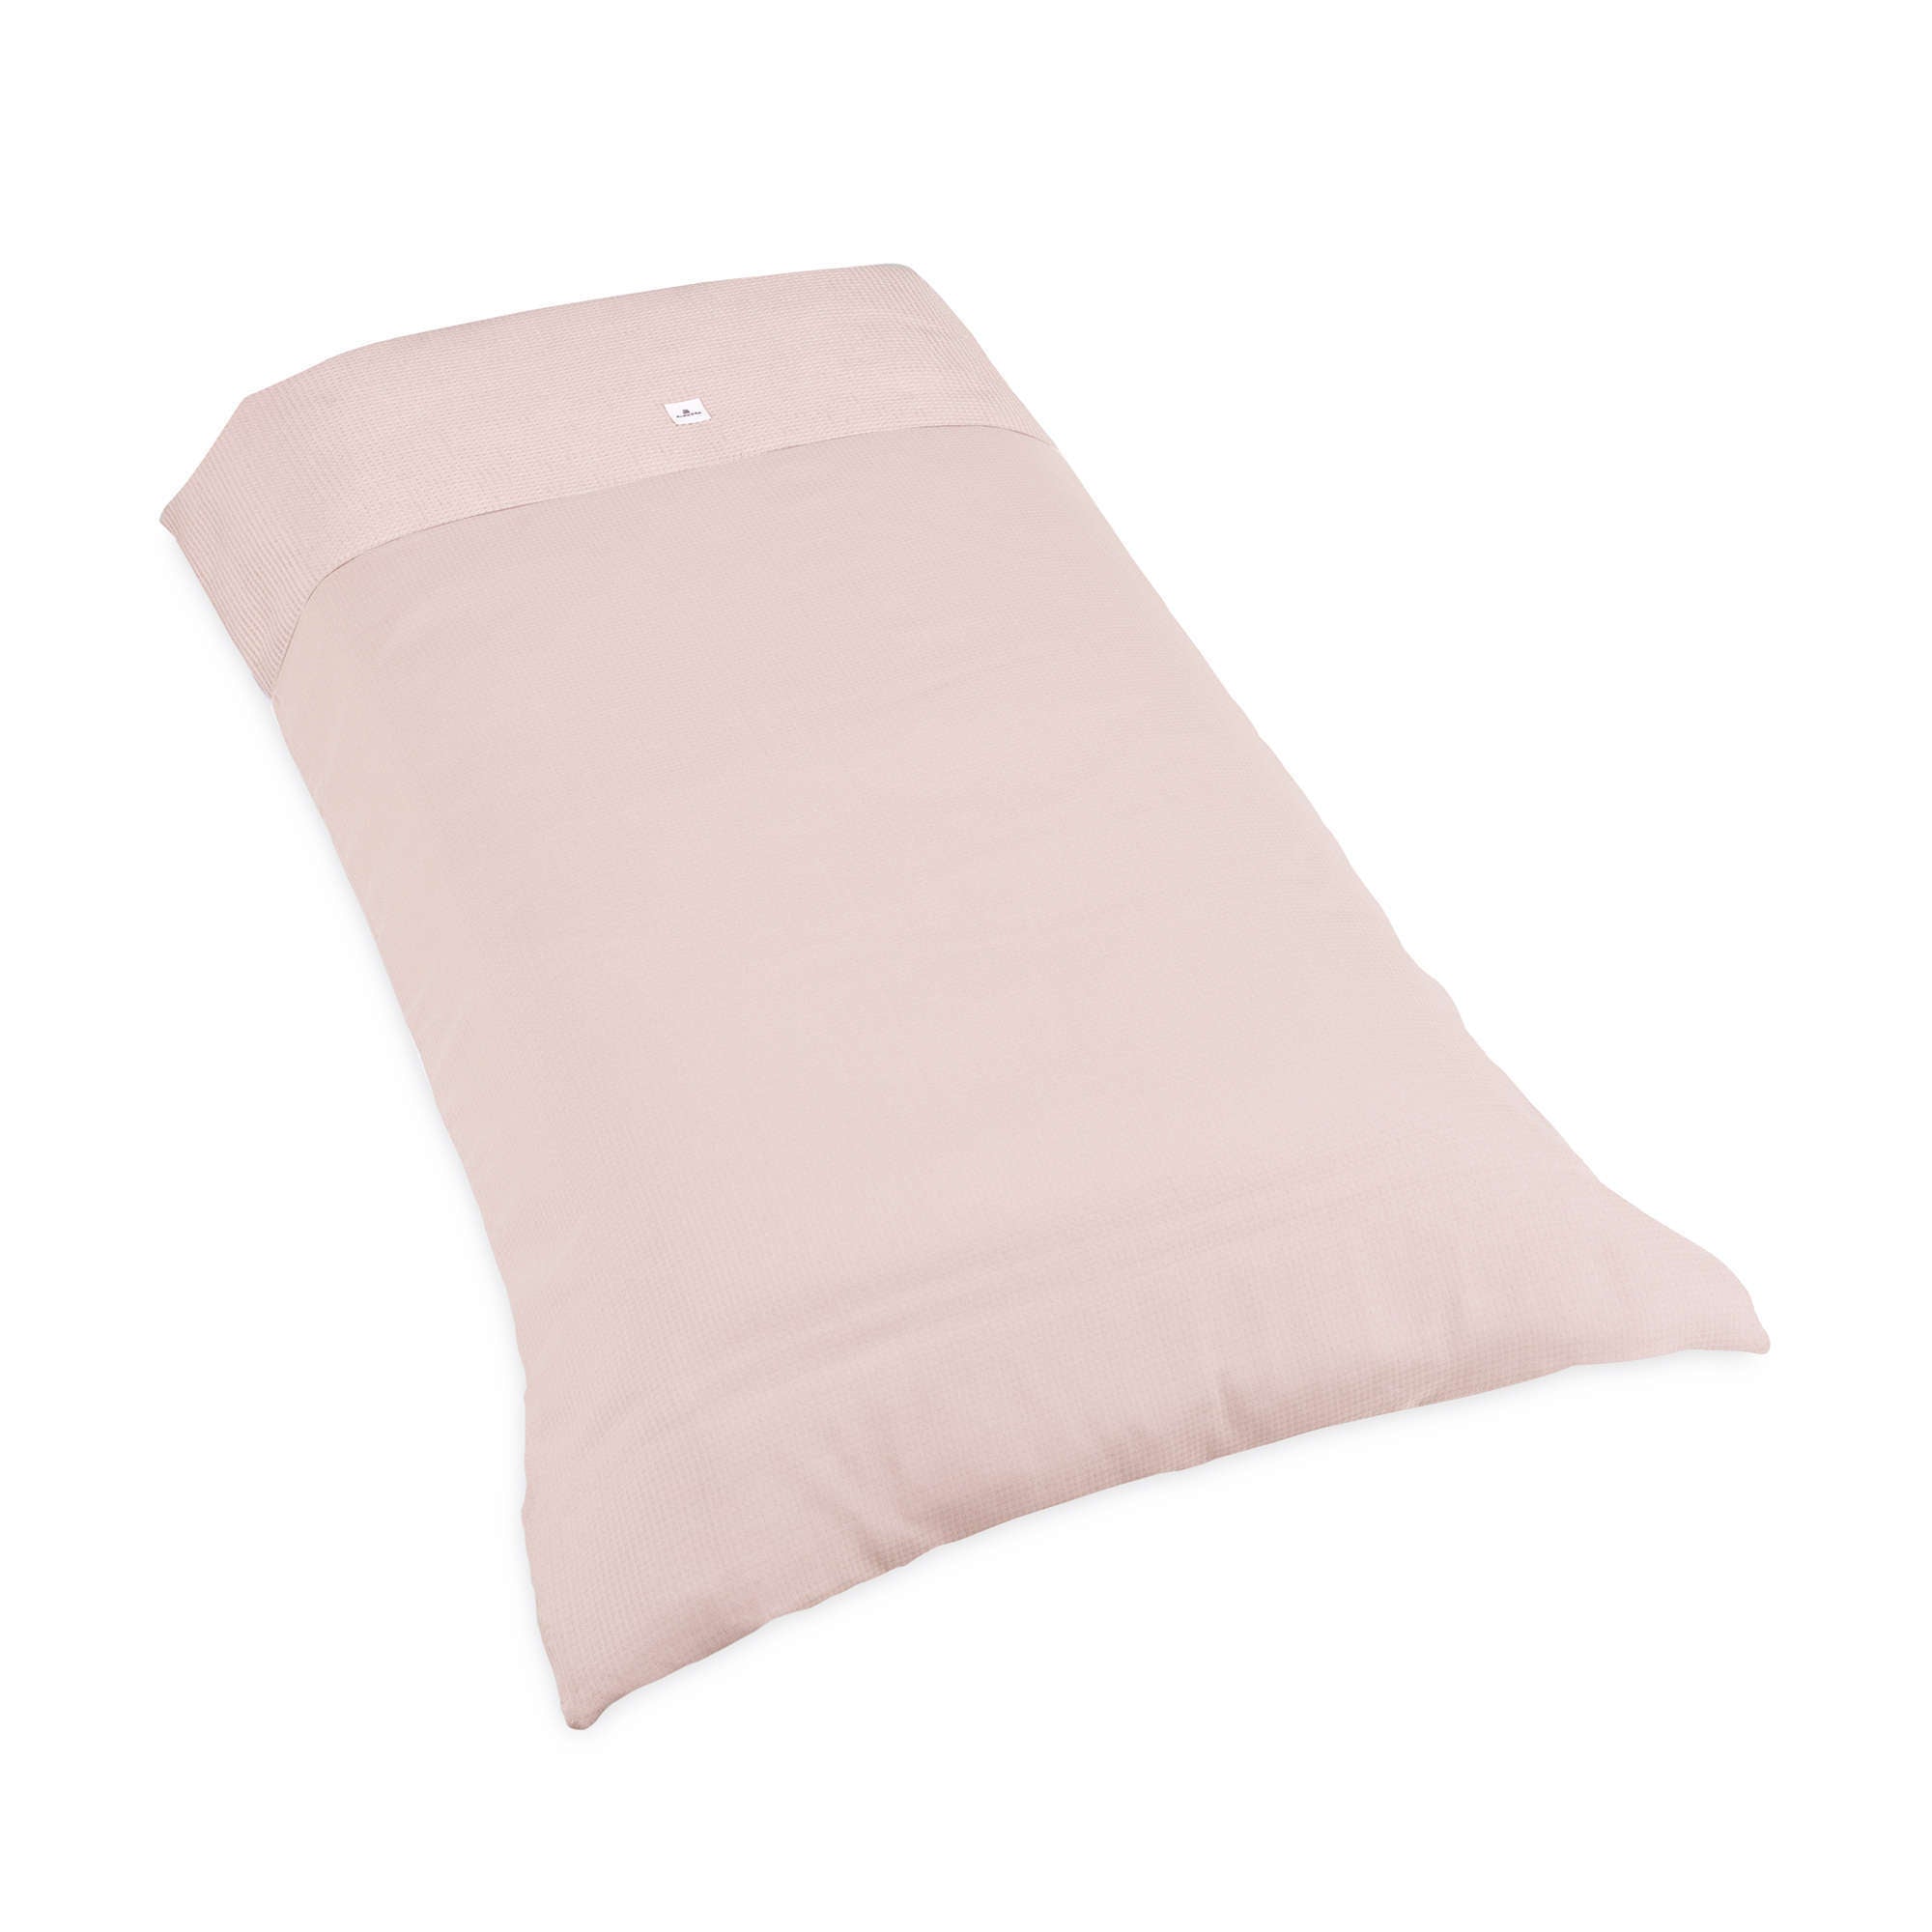 Juego de 2 piezas para cuna (60x120 cm): funda nórdica y almohada dE.LENZO  Gretel en color rosa